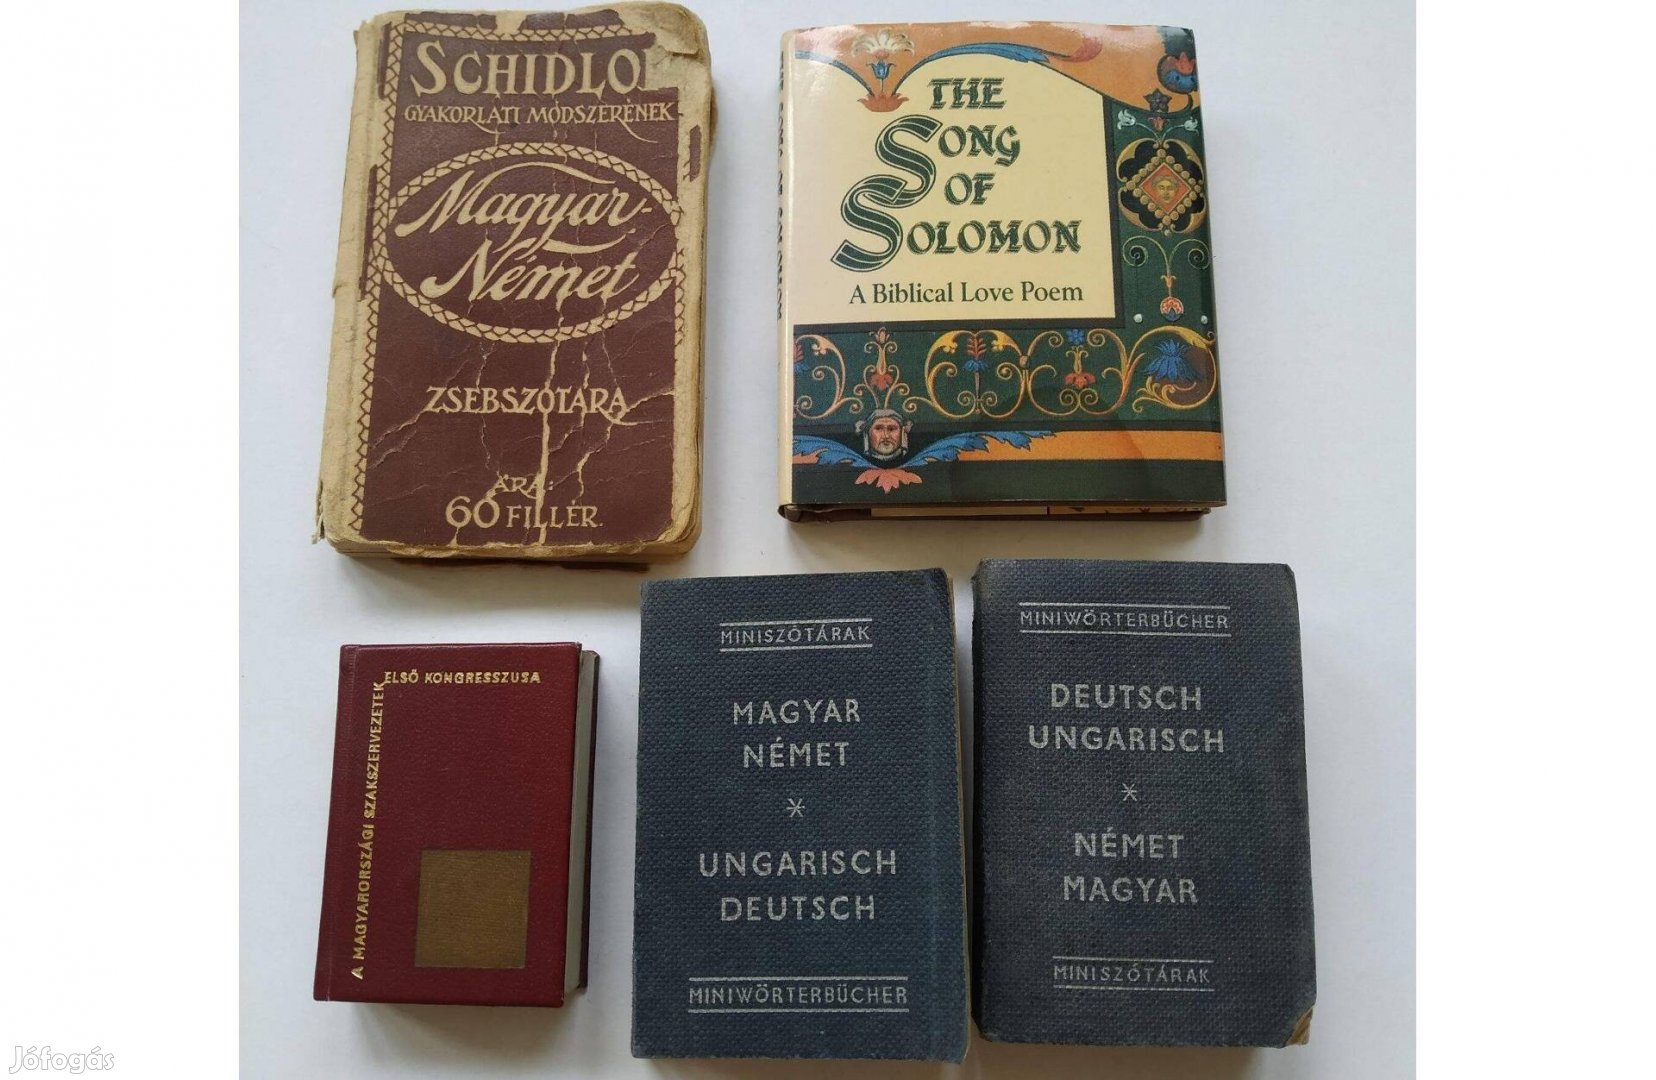 The Song of Solomon: Miniature Edition szakszervezetek - Minikönyvek